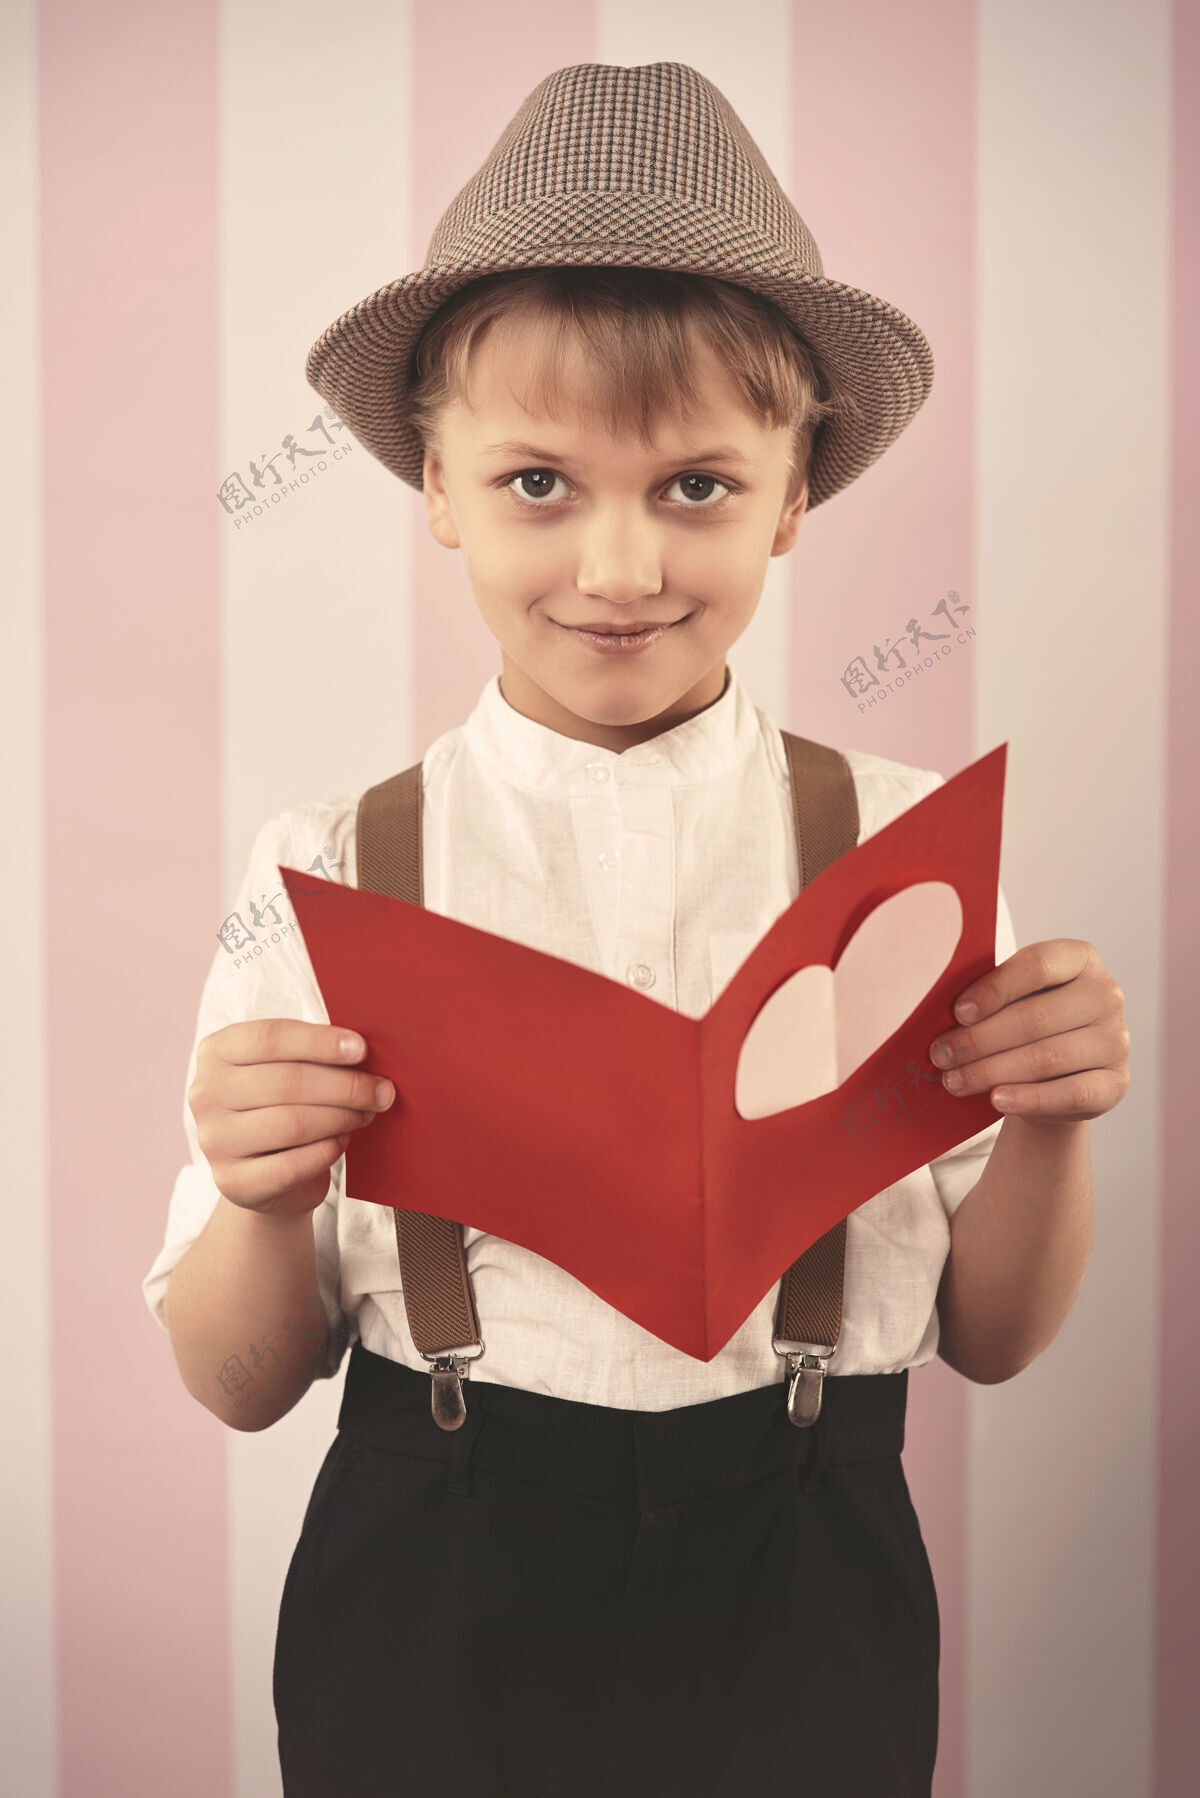 帽子秘密寄信人寄来的浪漫信制作礼物男孩